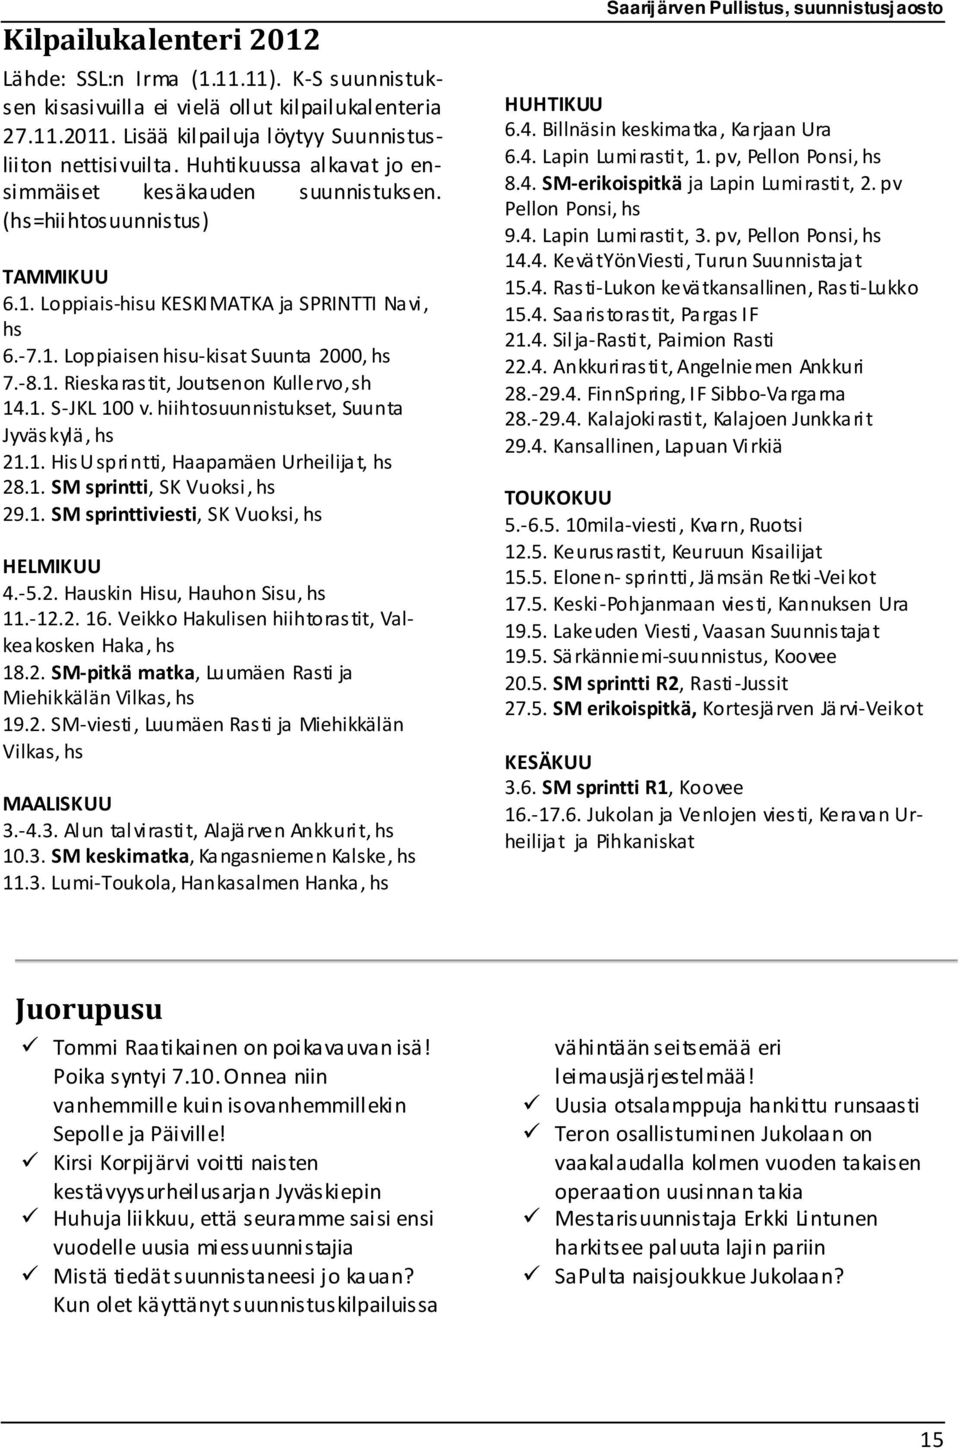 1. S-JKL 100 v. hiihtosuunnistukset, Suunta Jyväskylä, hs 21.1. HisU sprintti, Haapamäen Urheilijat, hs 28.1. SM sprintti, SK Vuoksi, hs 29.1. SM sprinttiviesti, SK Vuoksi, hs HELMIKUU 4.-5.2. Hauskin Hisu, Hauhon Sisu, hs 11.